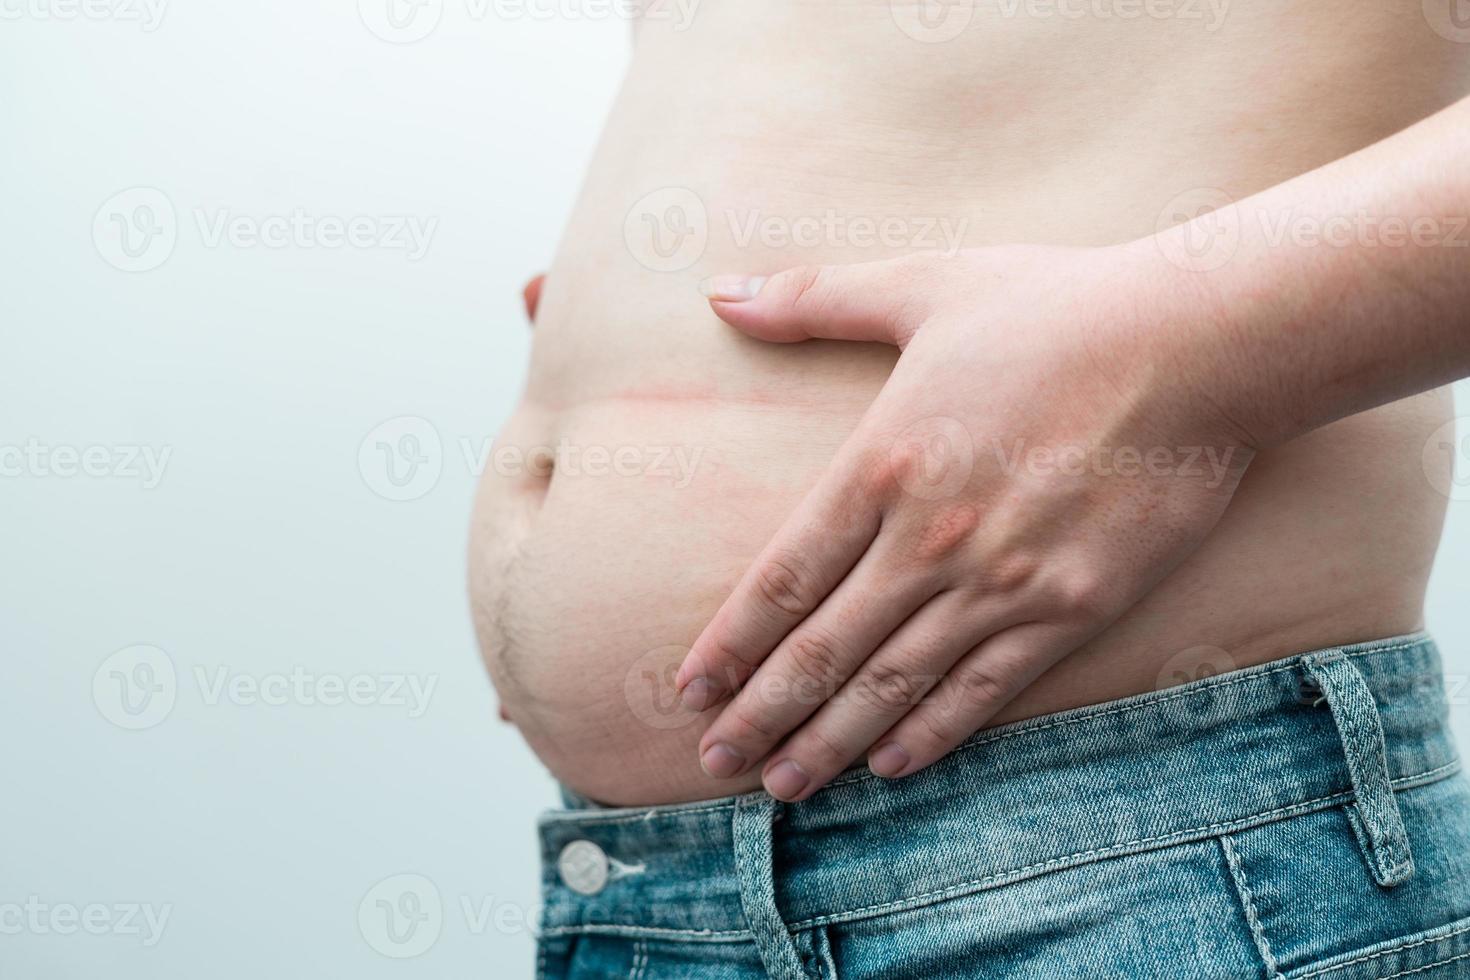 afbeelding van de zwaarlijvige buik van de man, geïsoleerd op een witte achtergrond foto